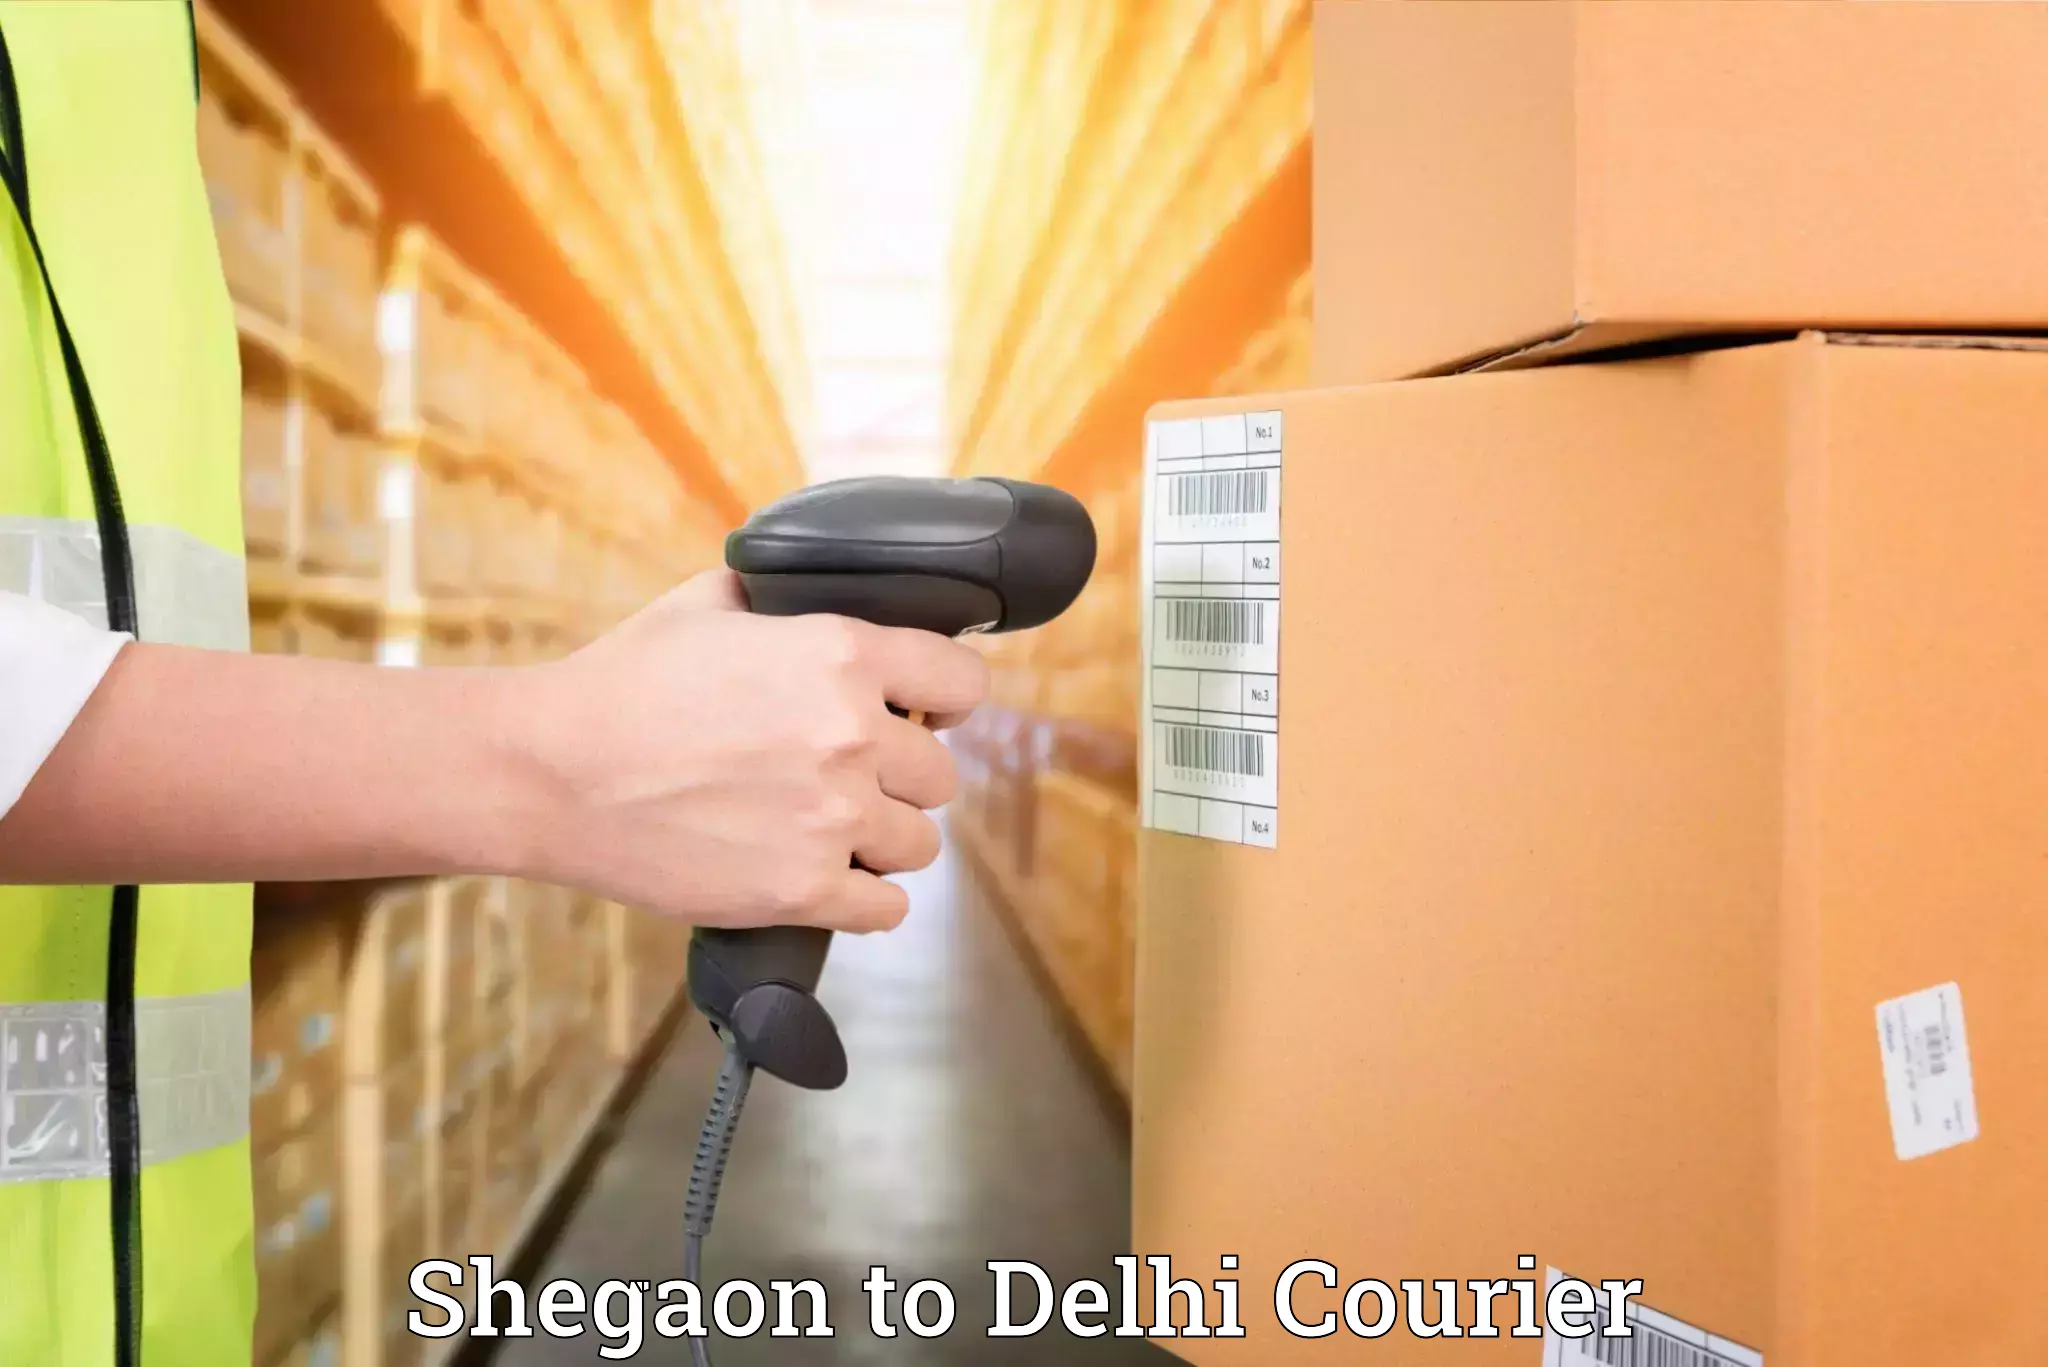 Furniture delivery service Shegaon to Delhi